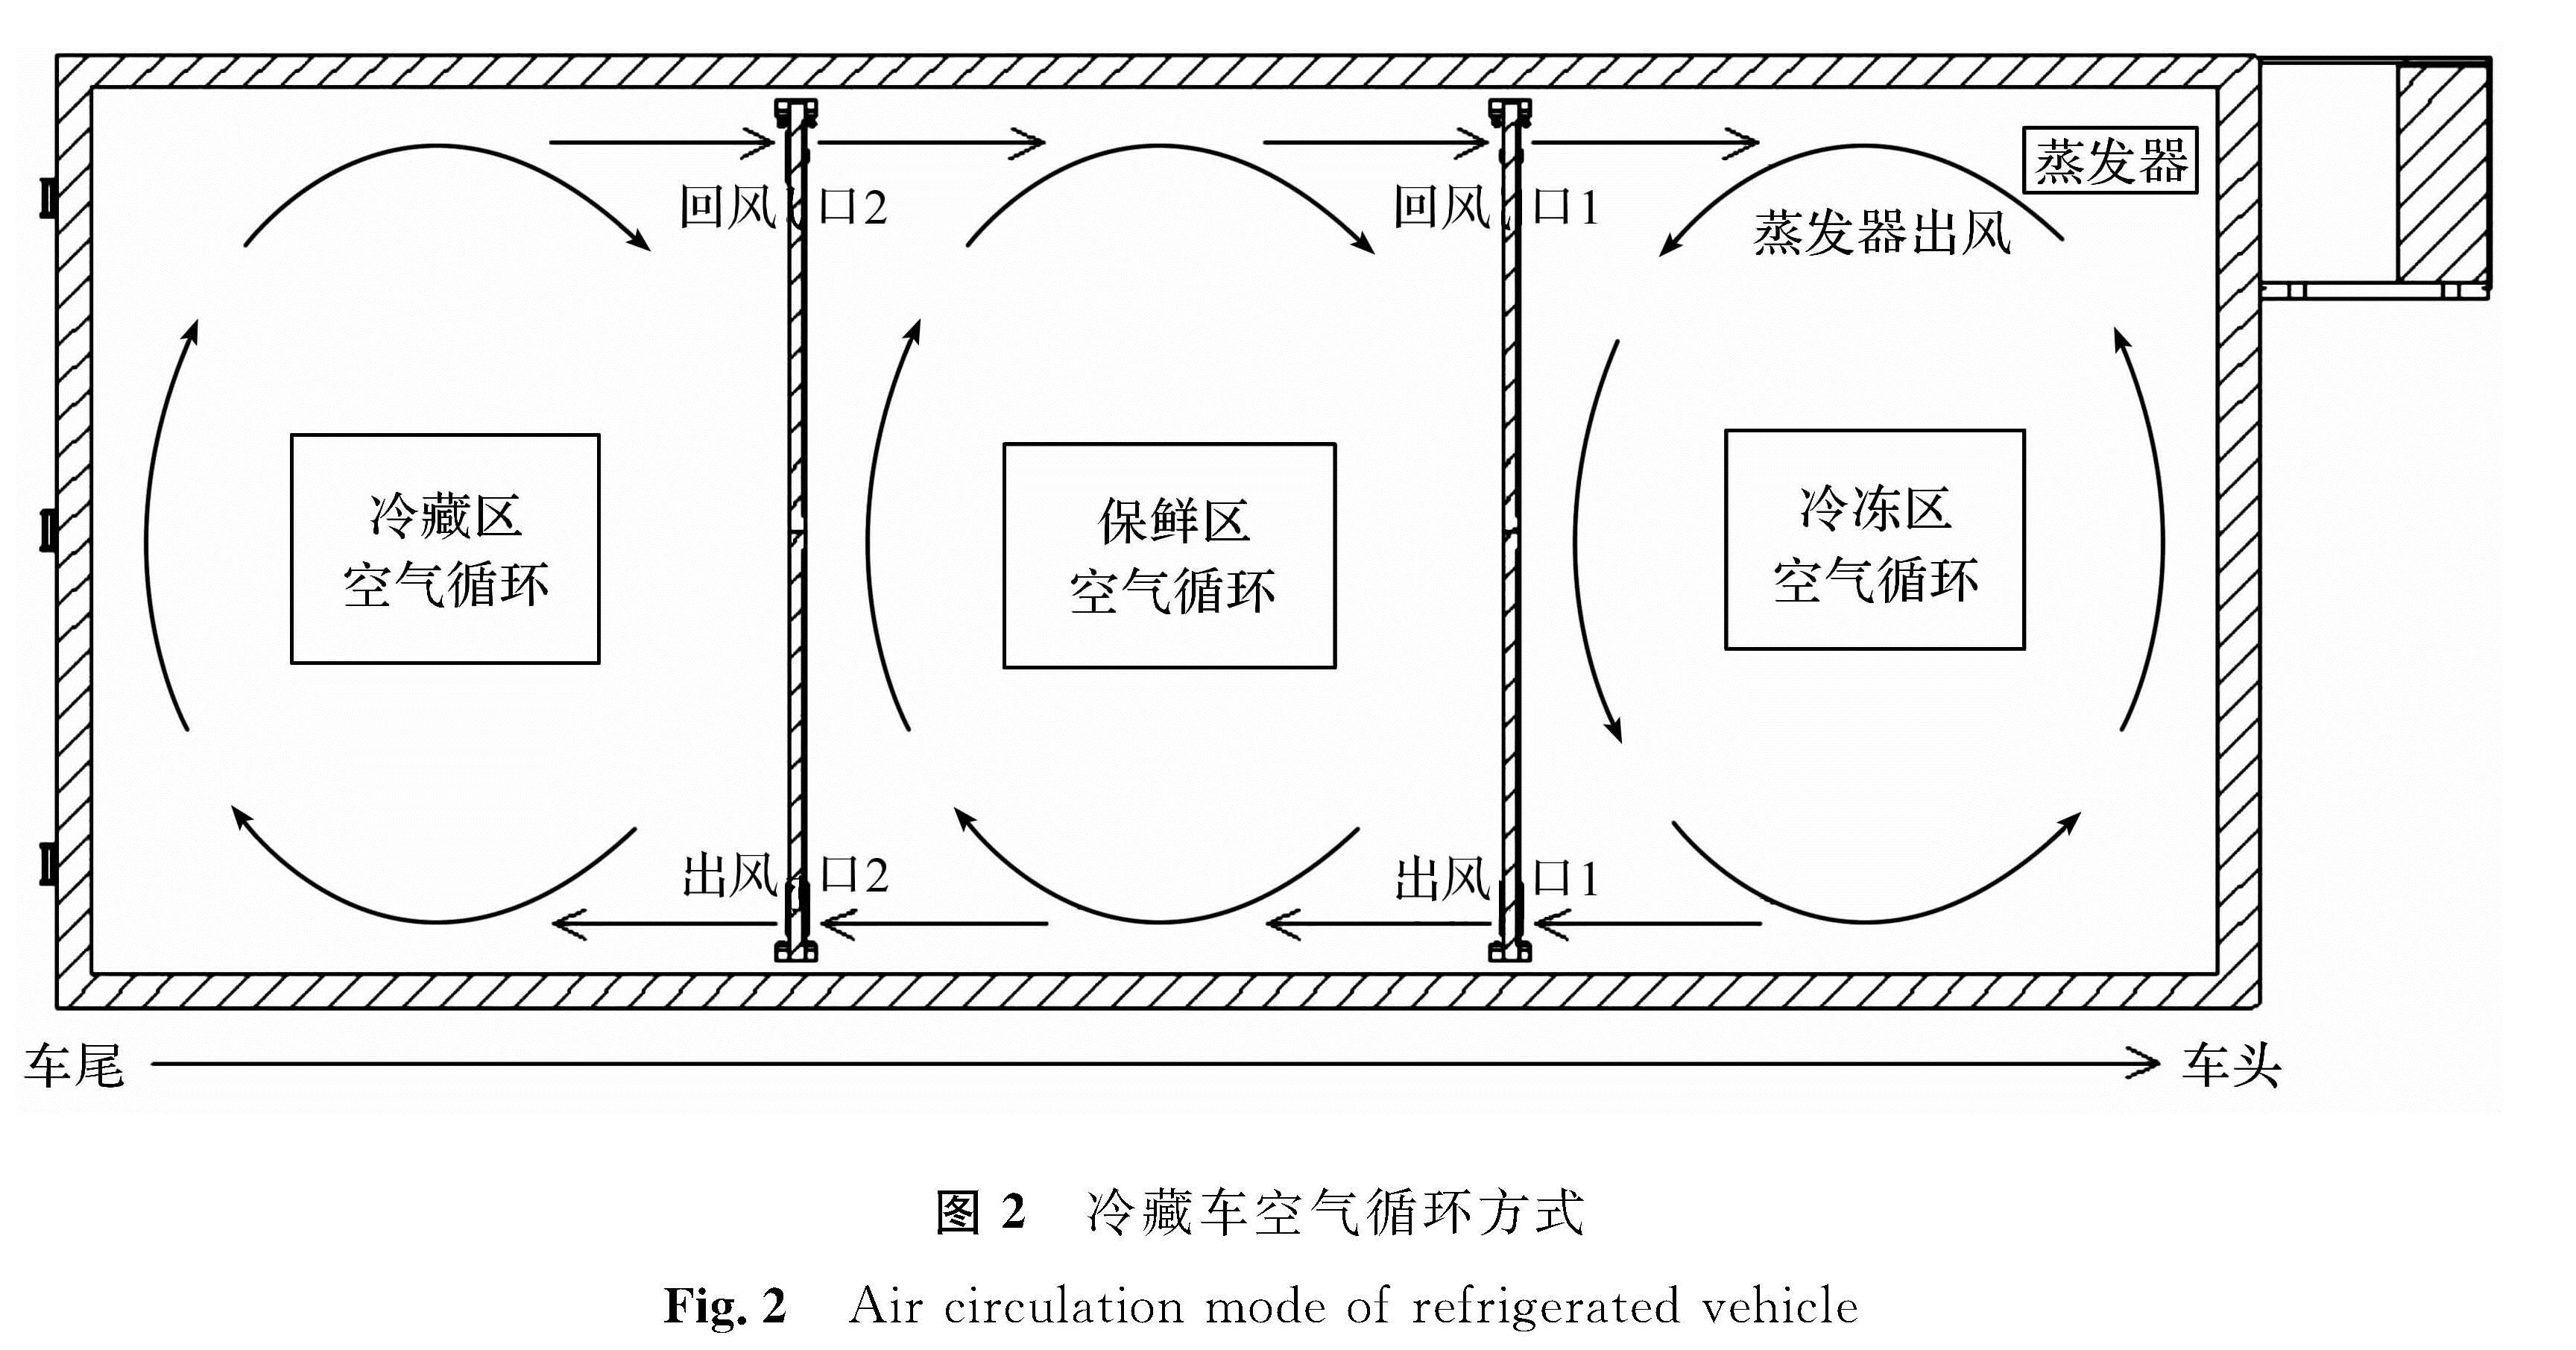 图2 冷藏车空气循环方式<br/>Fig.2 Air circulation mode of refrigerated vehicle